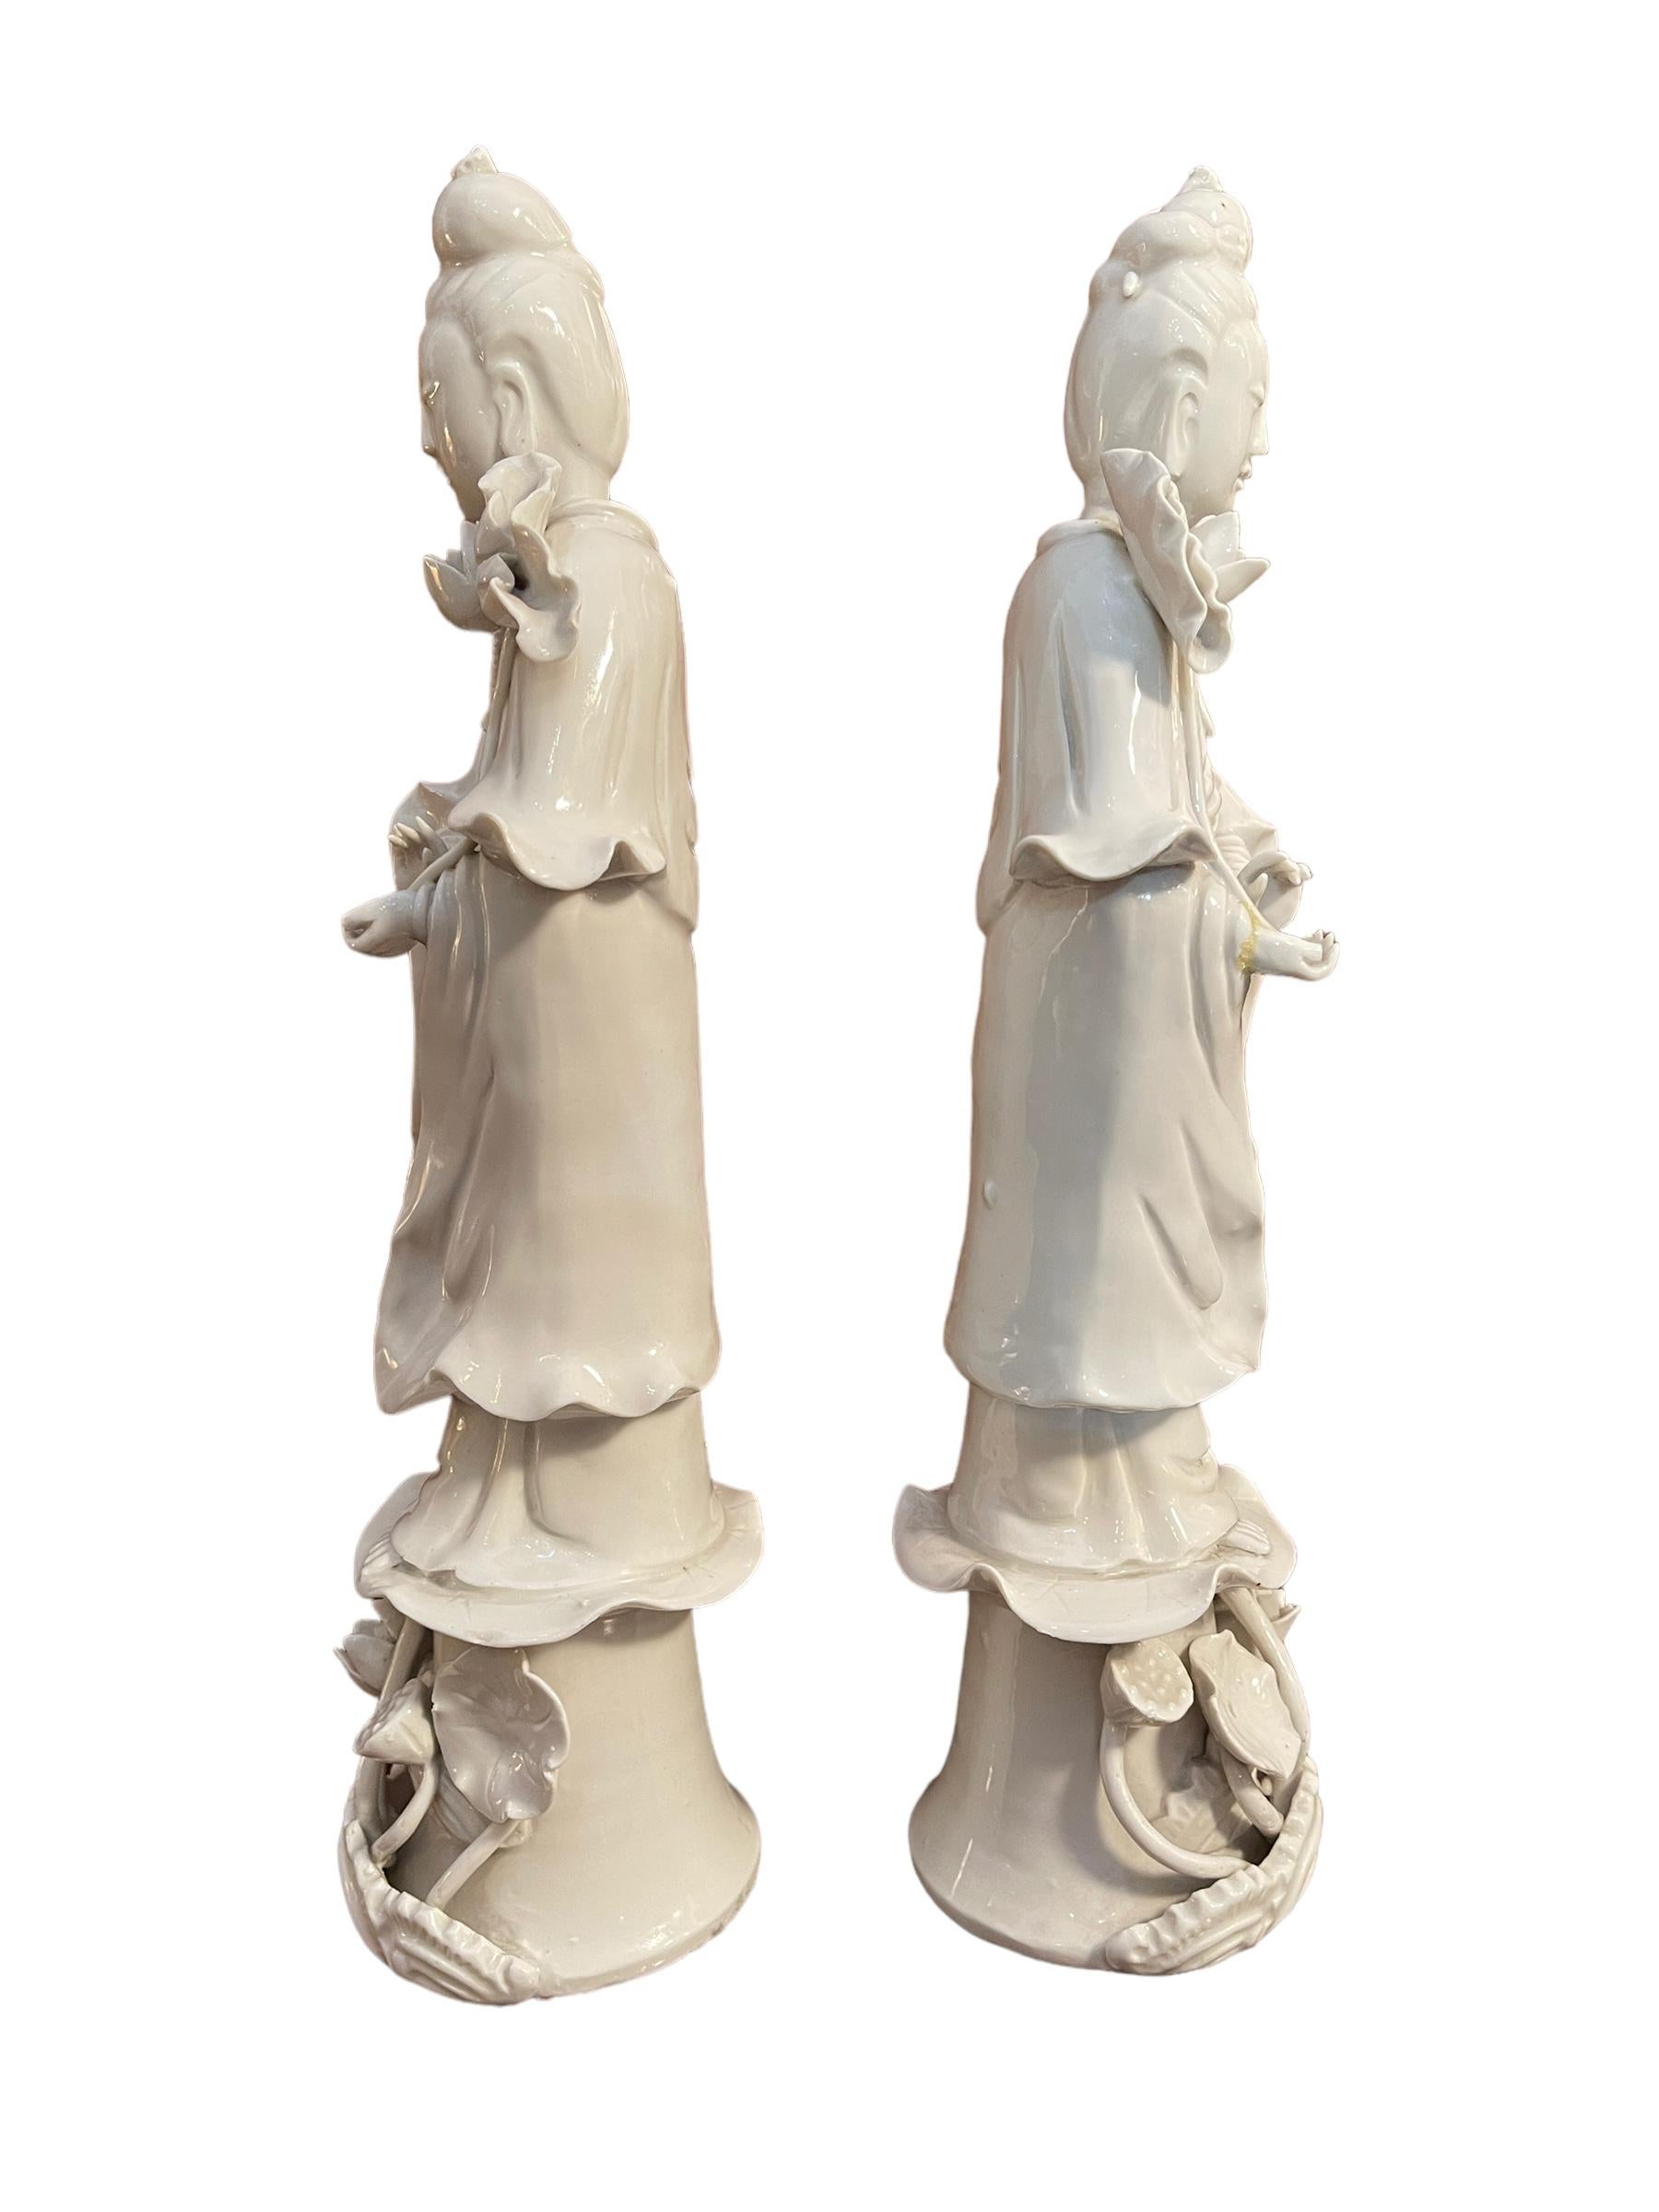 Paire de Guanyin, statues en céramique, Chine, XIXe siècle
Paire de céramiques chinoises raffinées, représentant des figures féminines sur un piédestal orné à thème floral.
Excellent état, comme le montre la photo
Dimensions de la base : diamètre 9